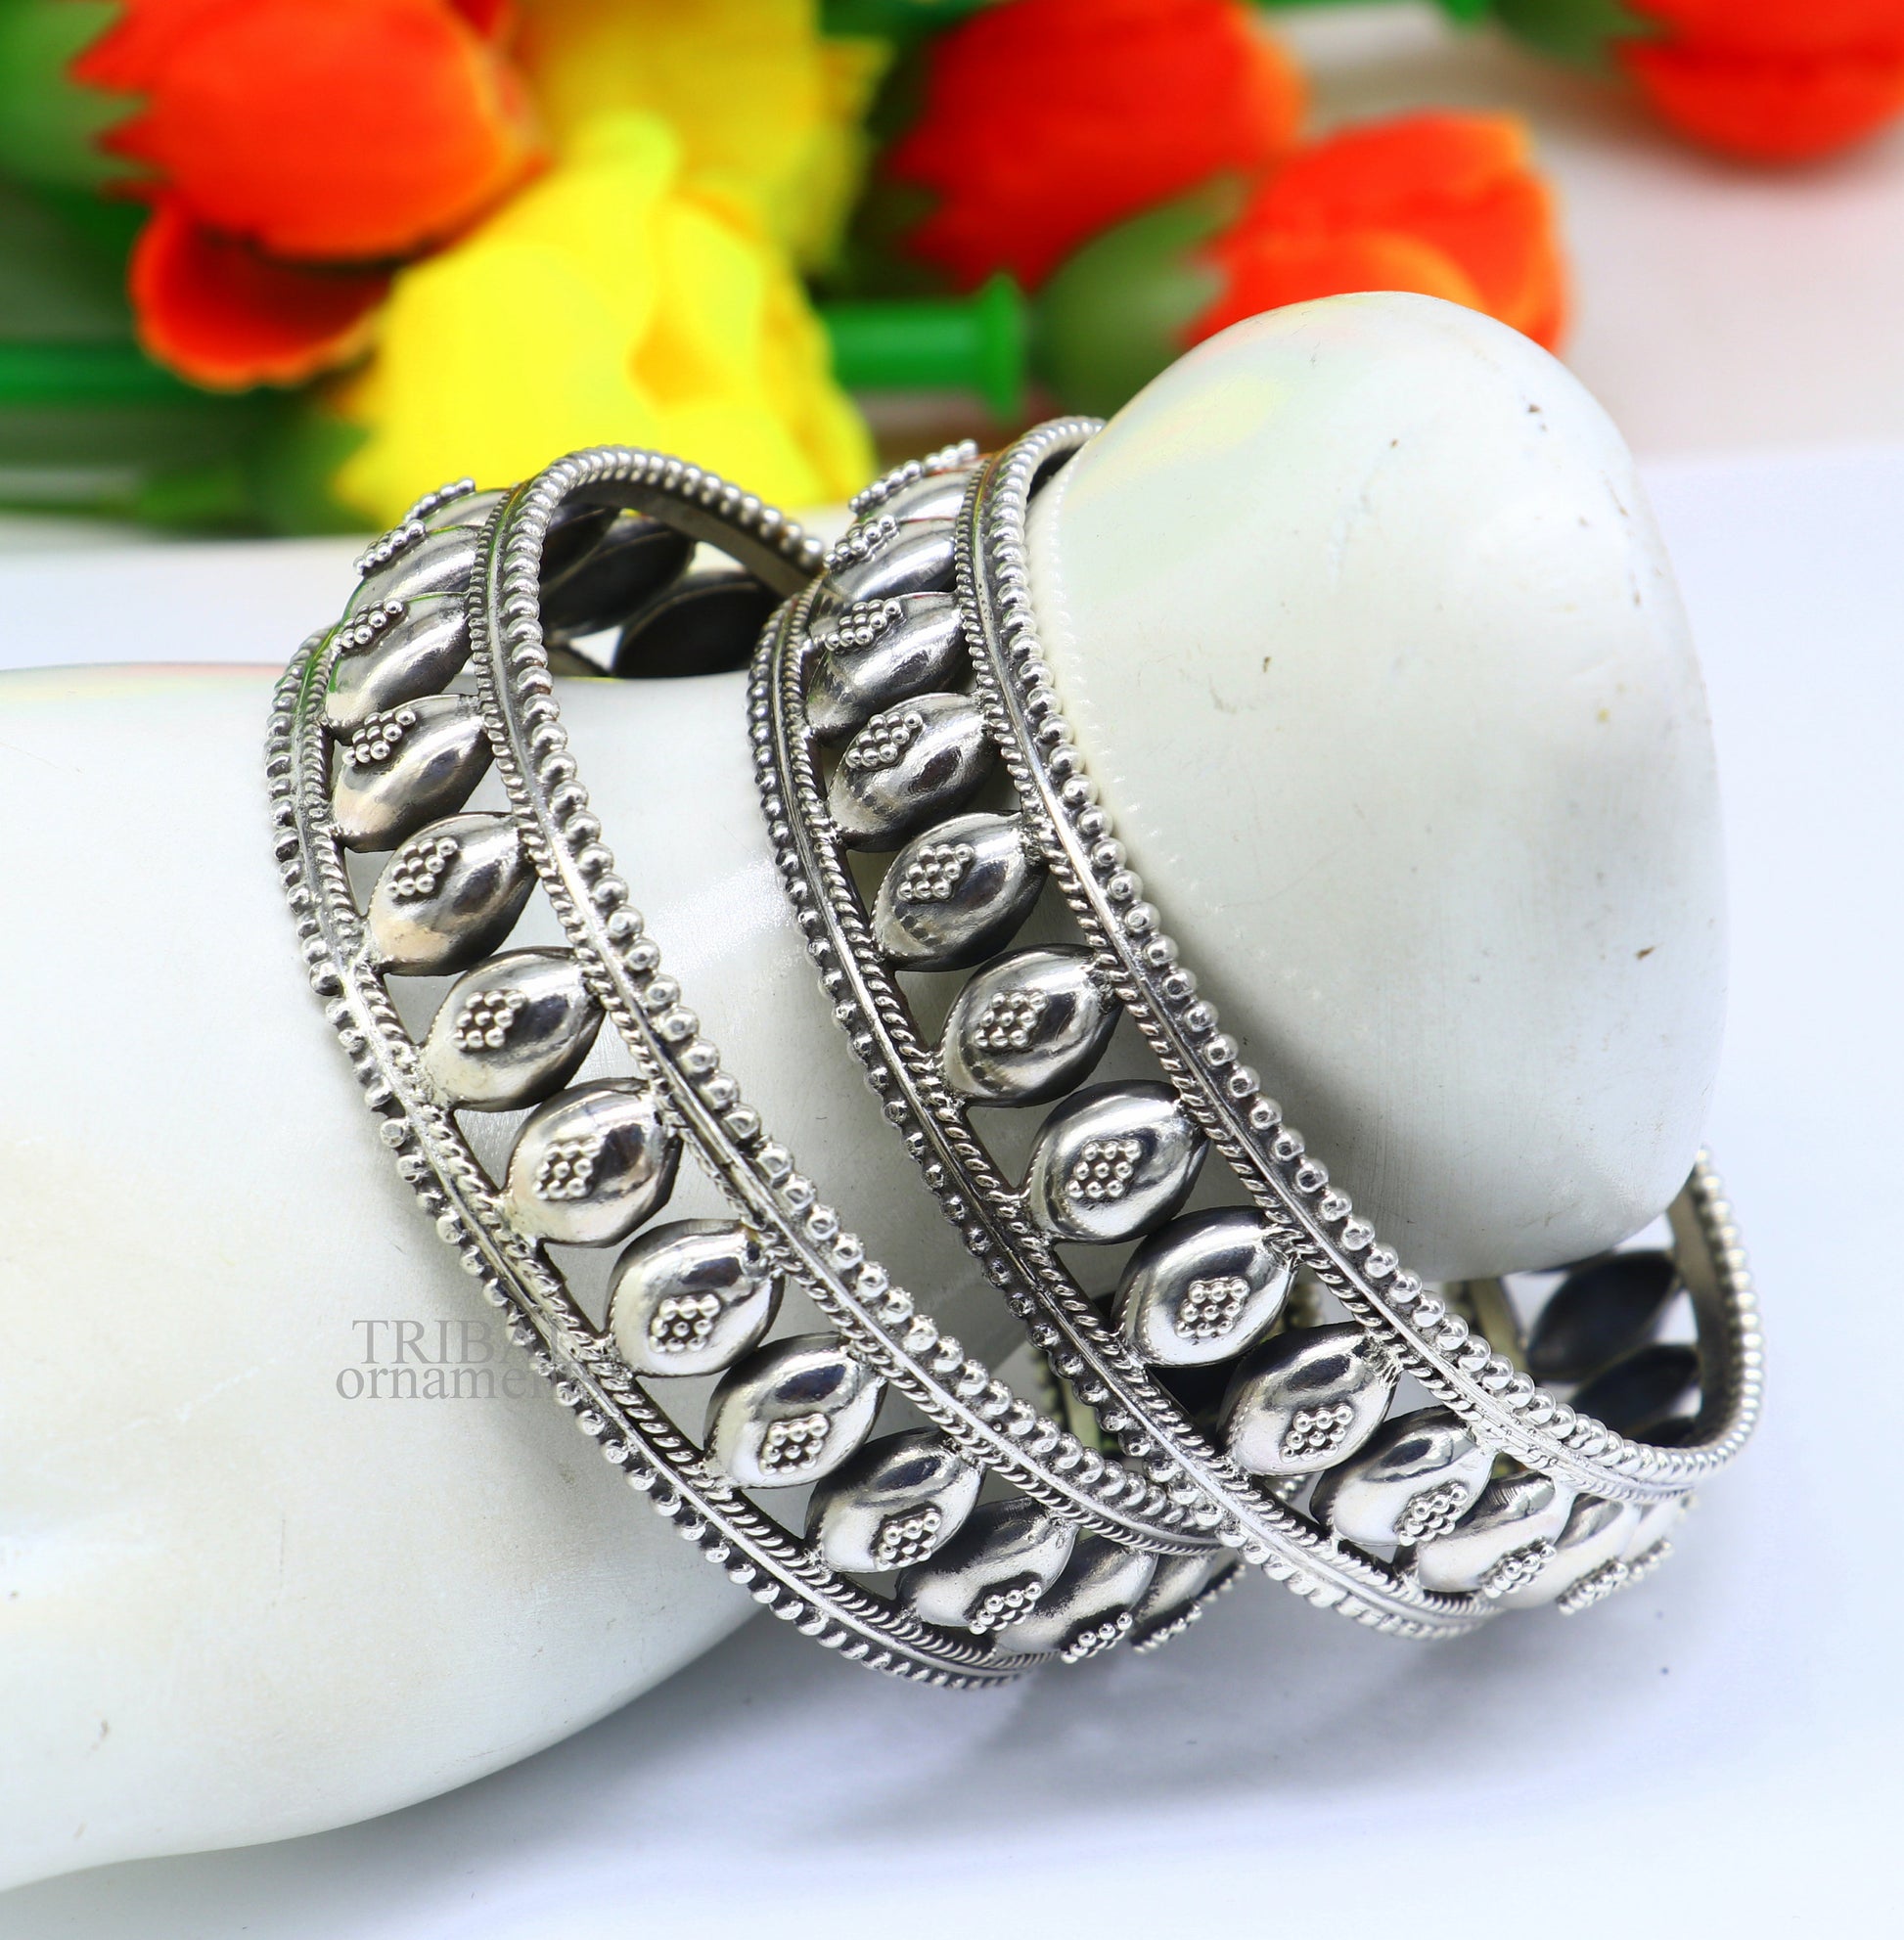 Floral style 925 sterling silver amazing customized bangle bracelet kada , best brides gifting ethnic stylish tribal jewelry ba118 Single bangle